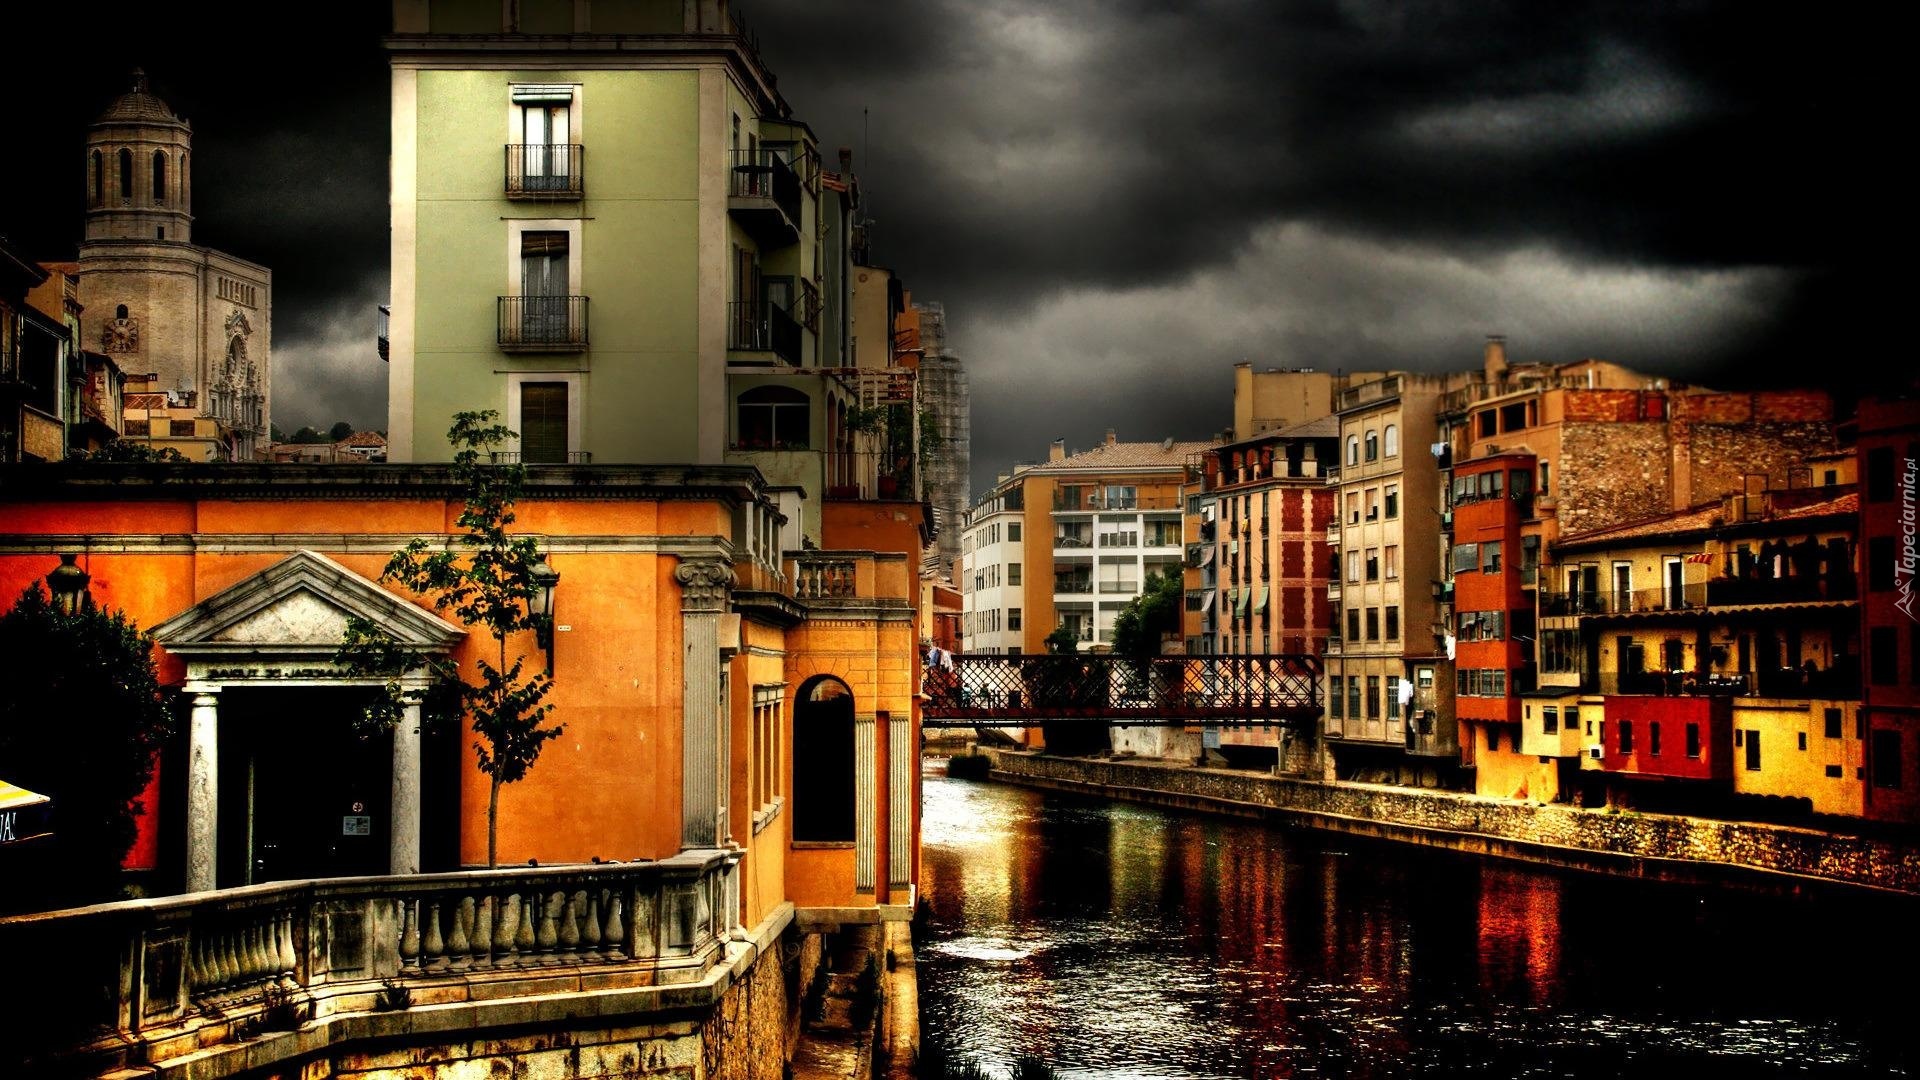 Domy, Kanał, Wenecja, Włochy